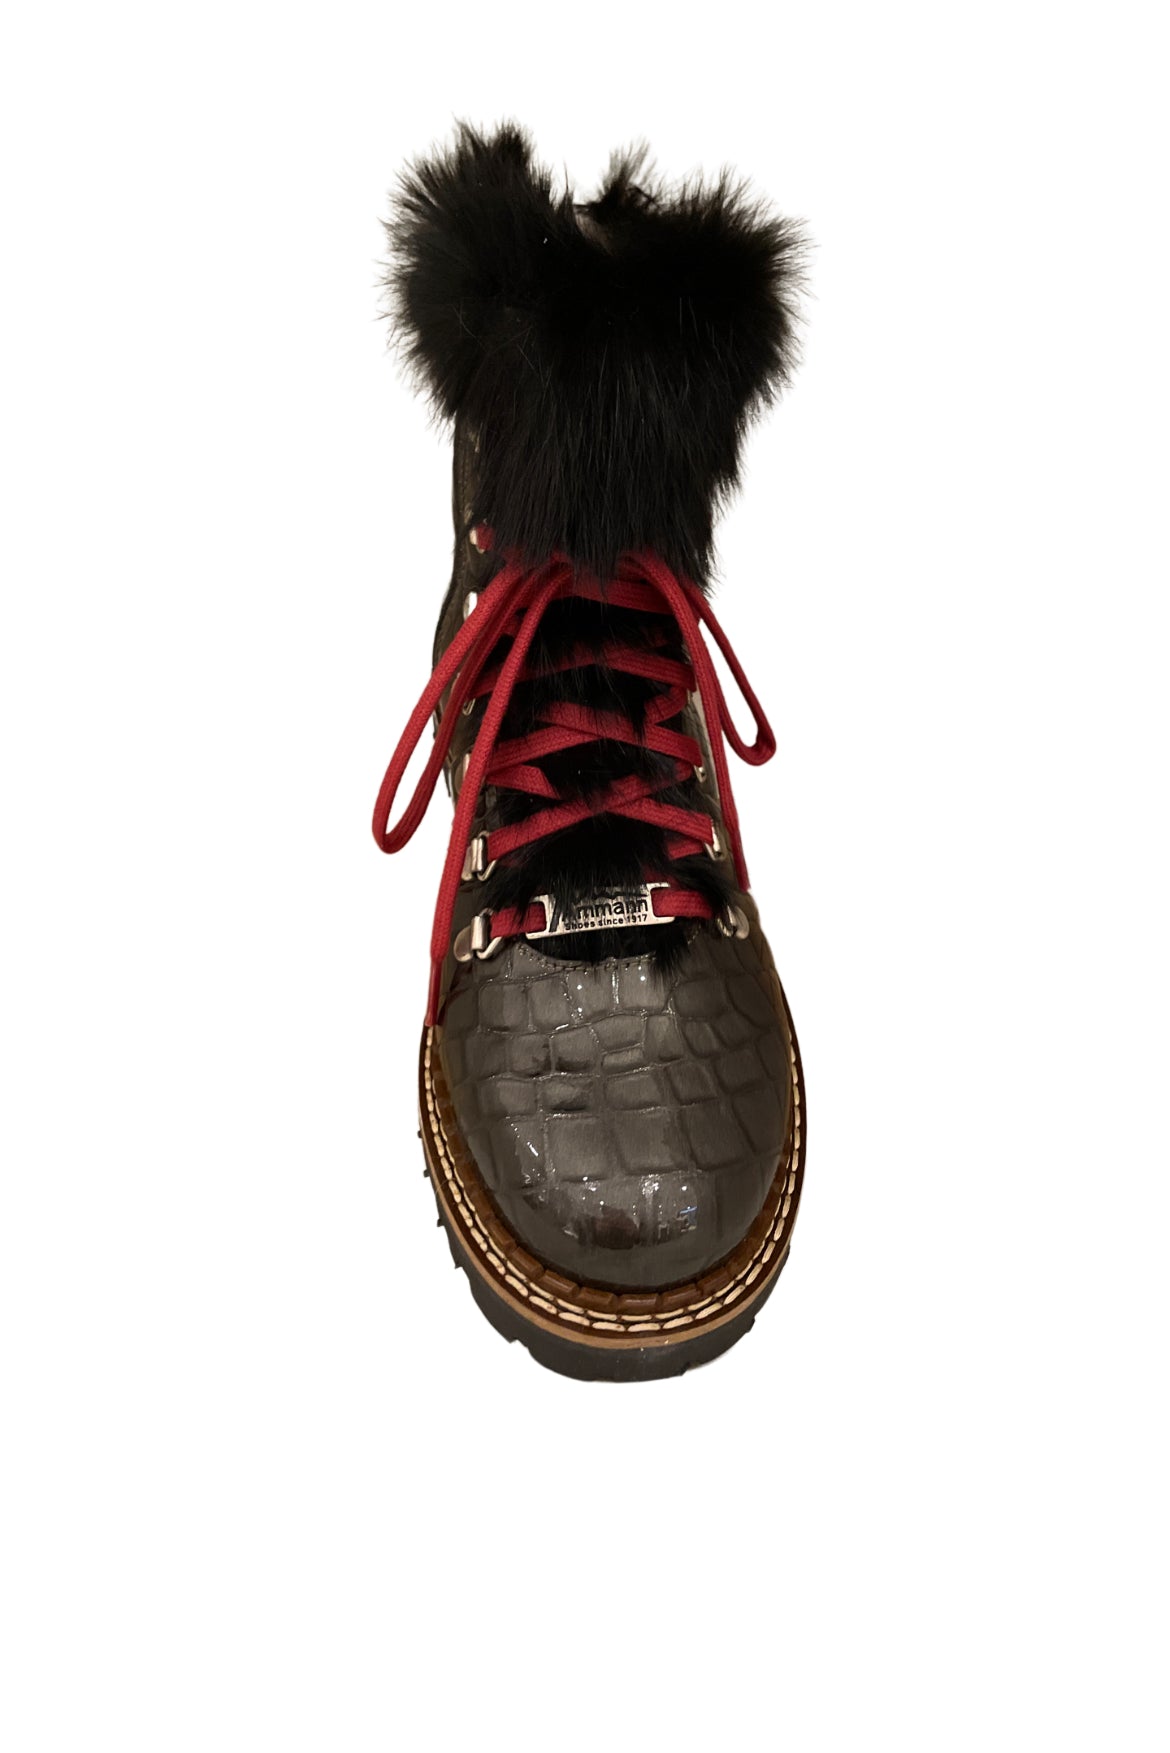 Ammann Splugen Black Fur Trim Croc Leather Ankle Boots